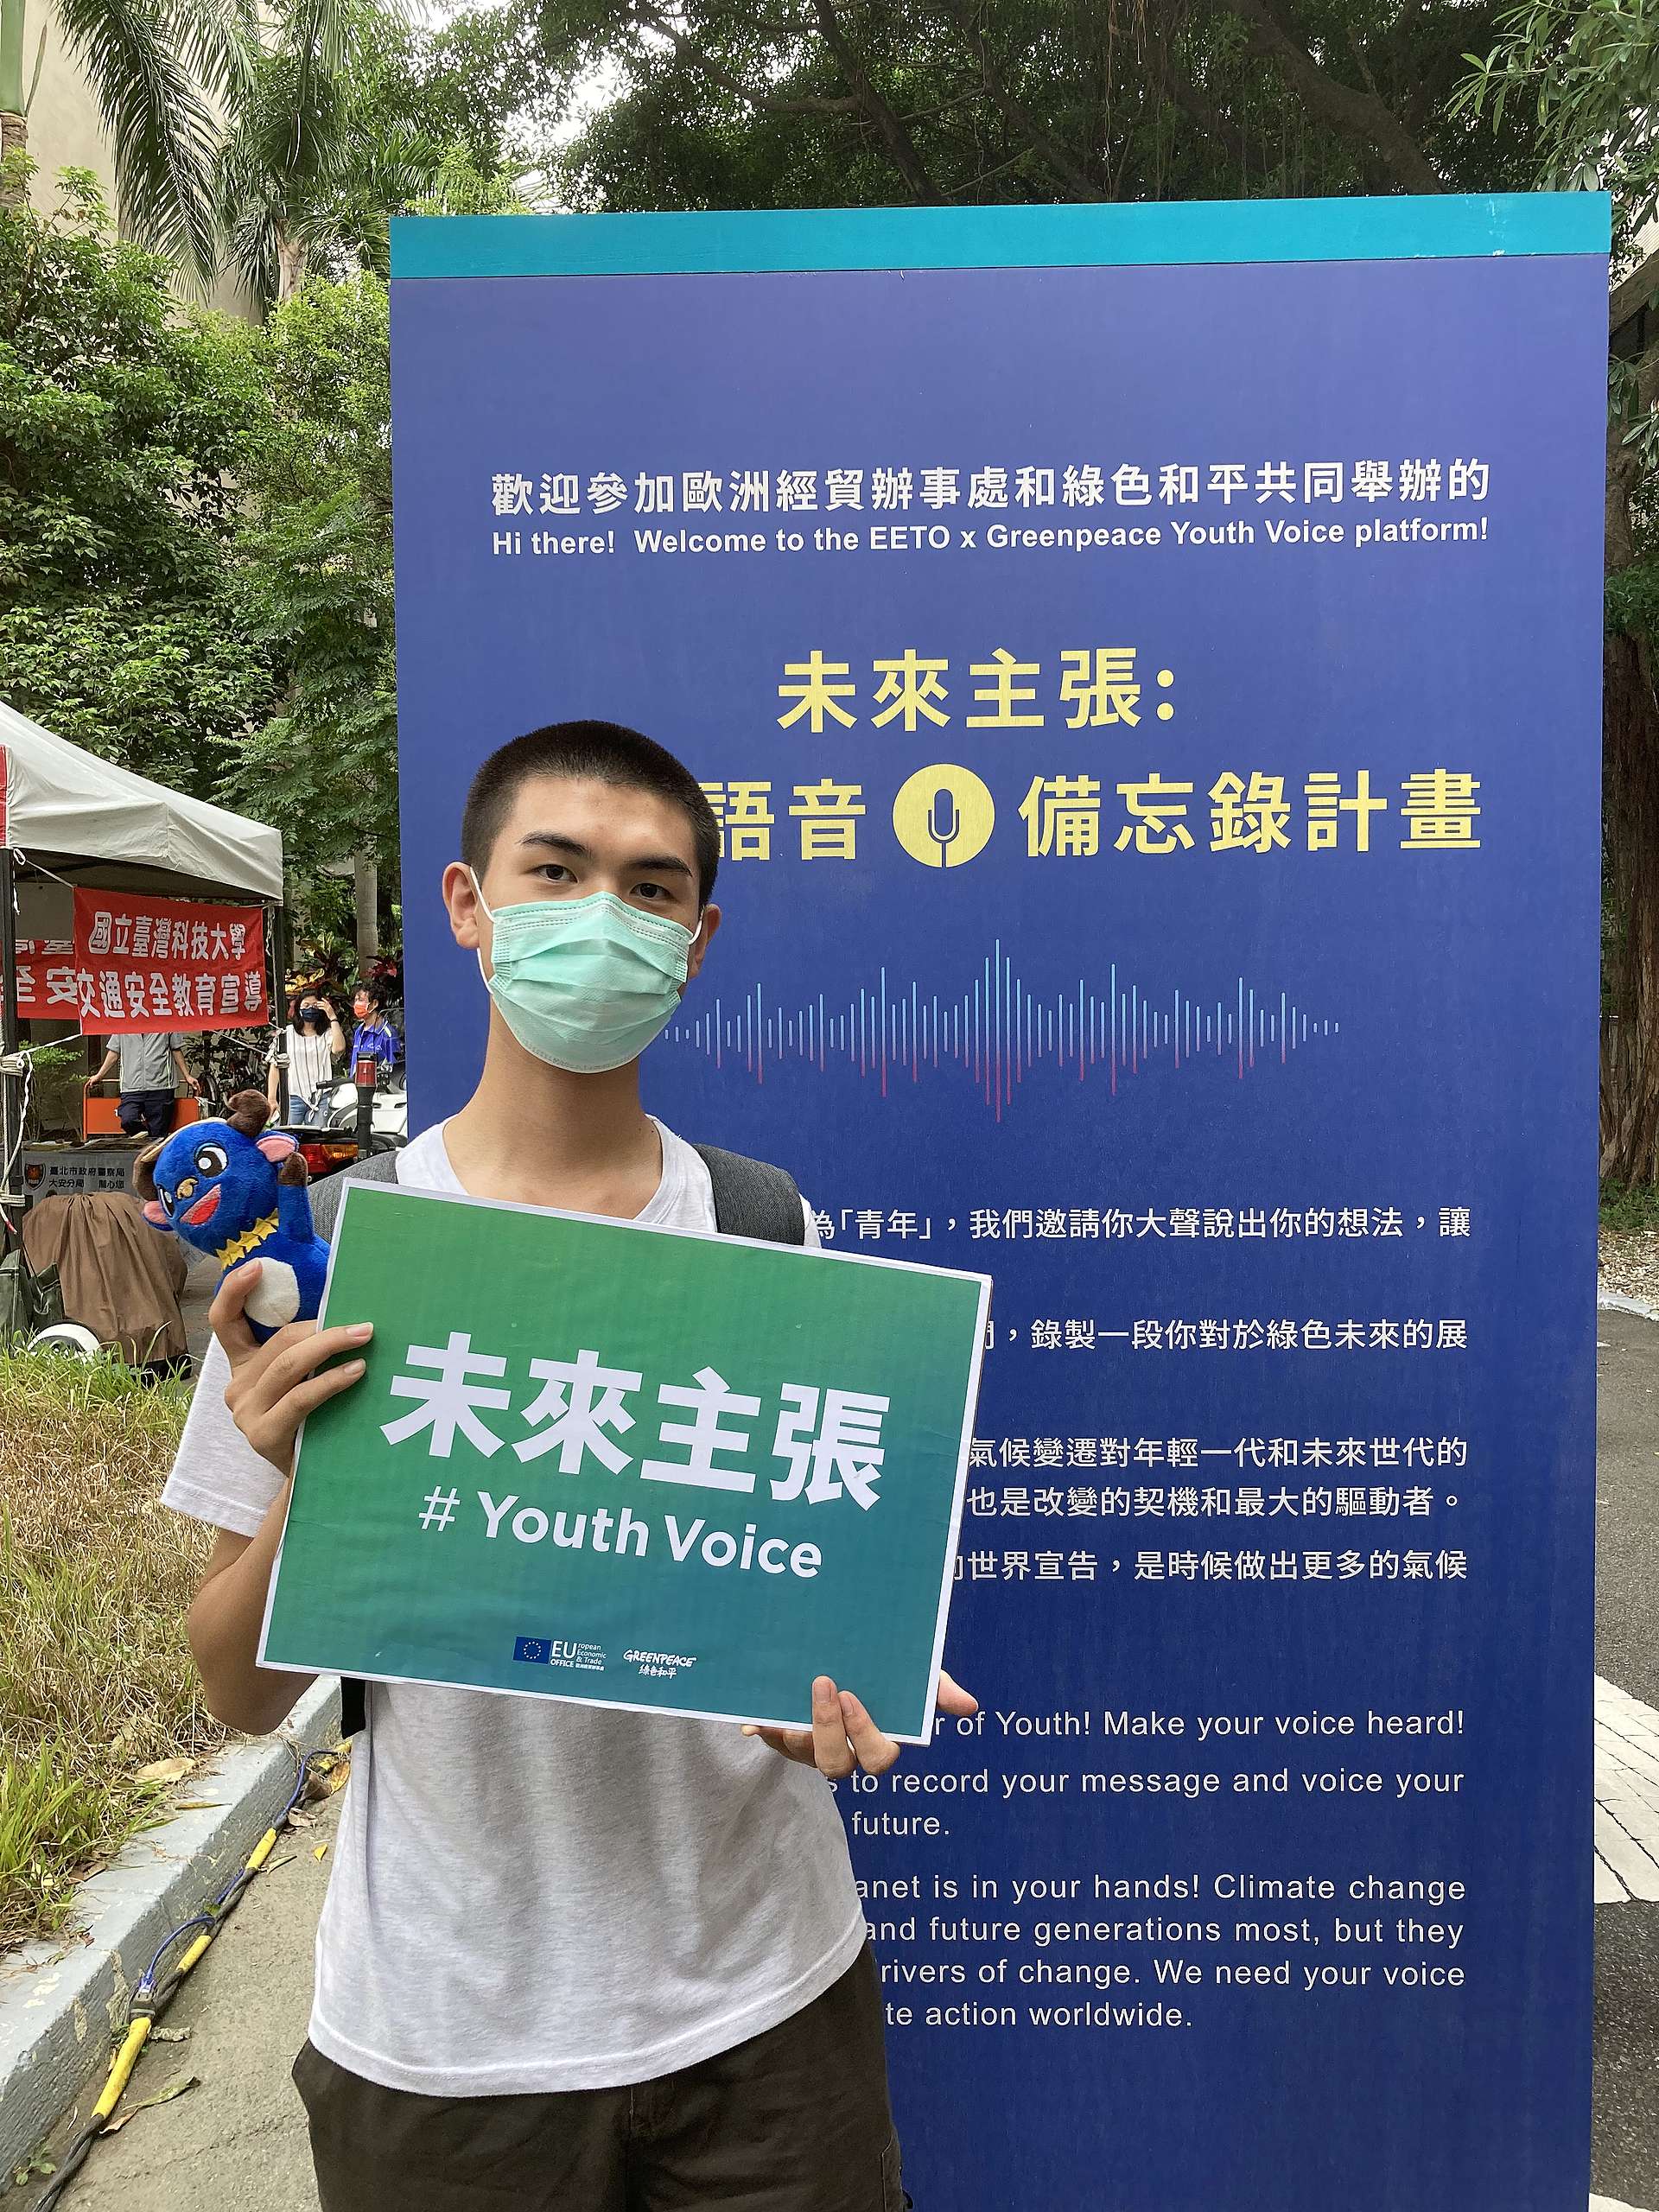 臺科大學生張立一參與綠色和平「氣候語音備忘錄」活動，認為青年雖然還很年輕，卻可以發揮無限潛能。